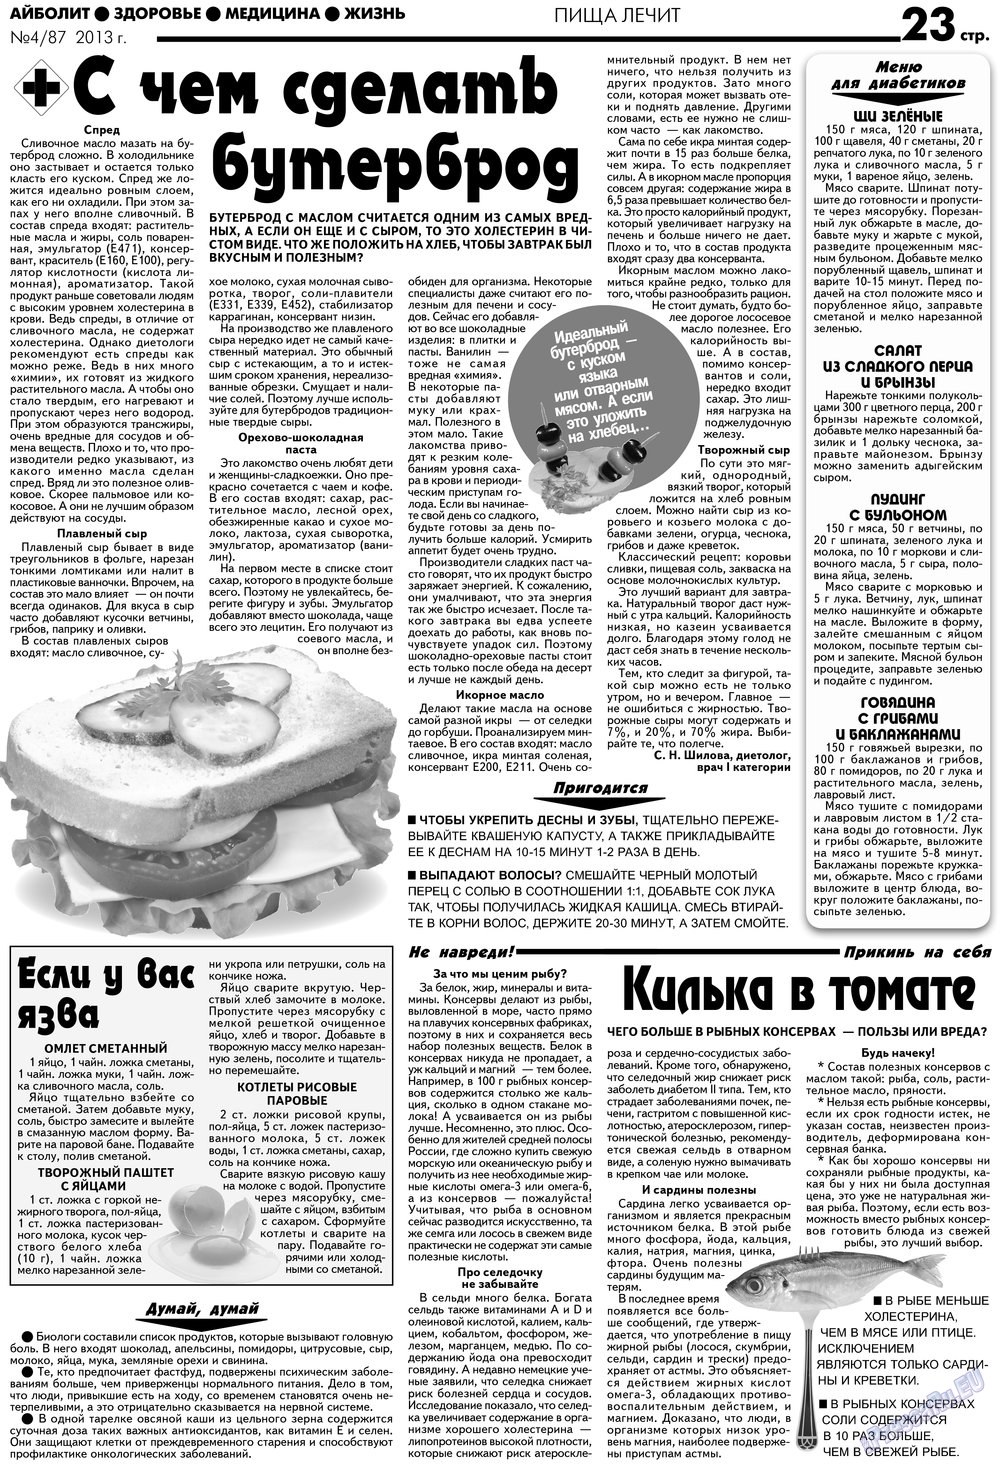 АйБолит, газета. 2013 №4 стр.23